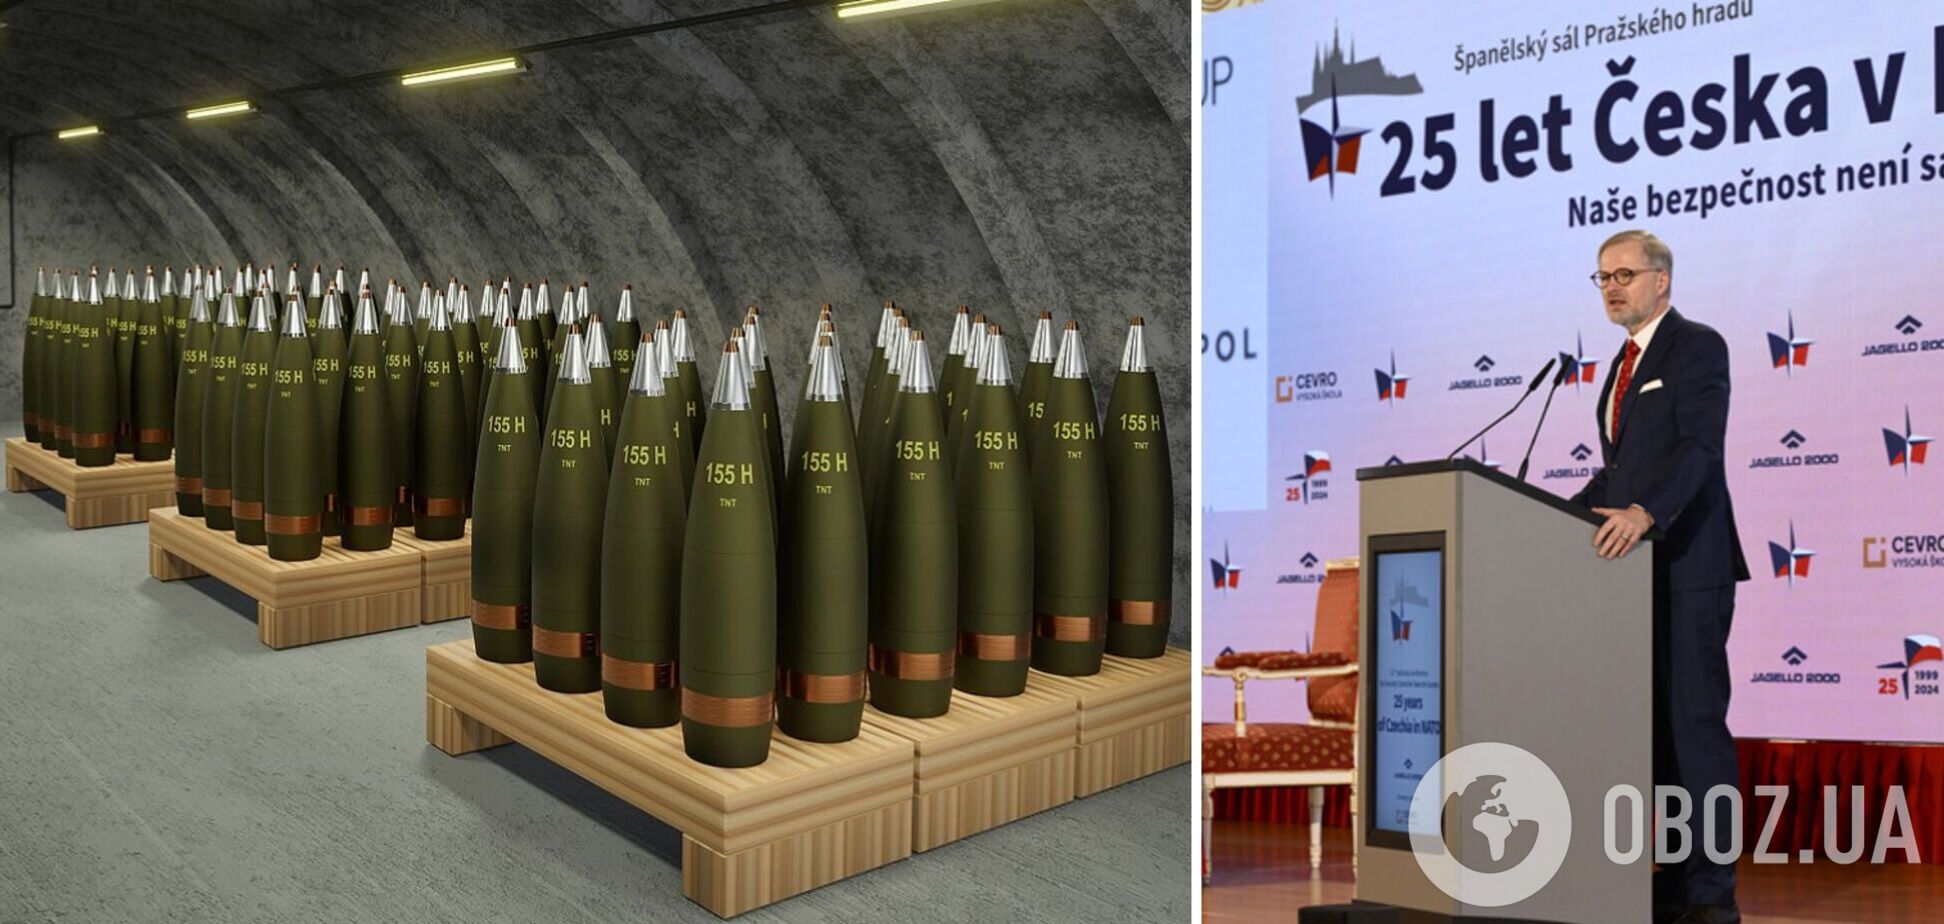 Чехия продолжает работать над поиском боеприпасов для Украины: Фиала озвучил подробности